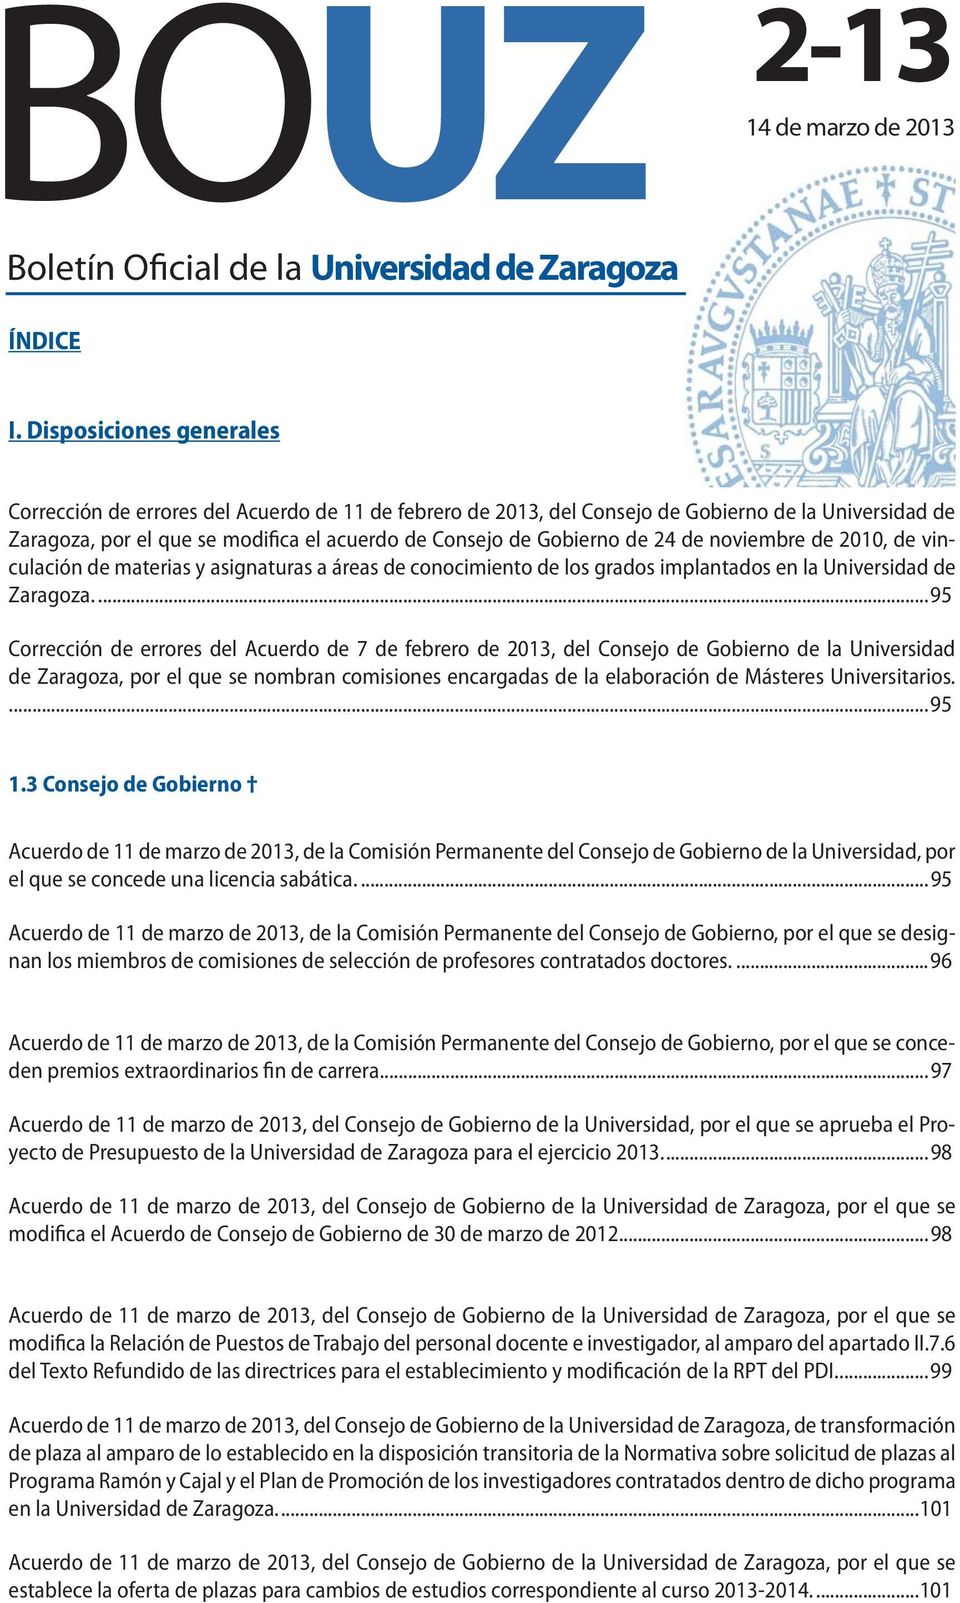 24 de noviembre de 2010, de vinculación de materias y asignaturas a áreas de conocimiento de los grados implantados en la Universidad de Zaragoza.